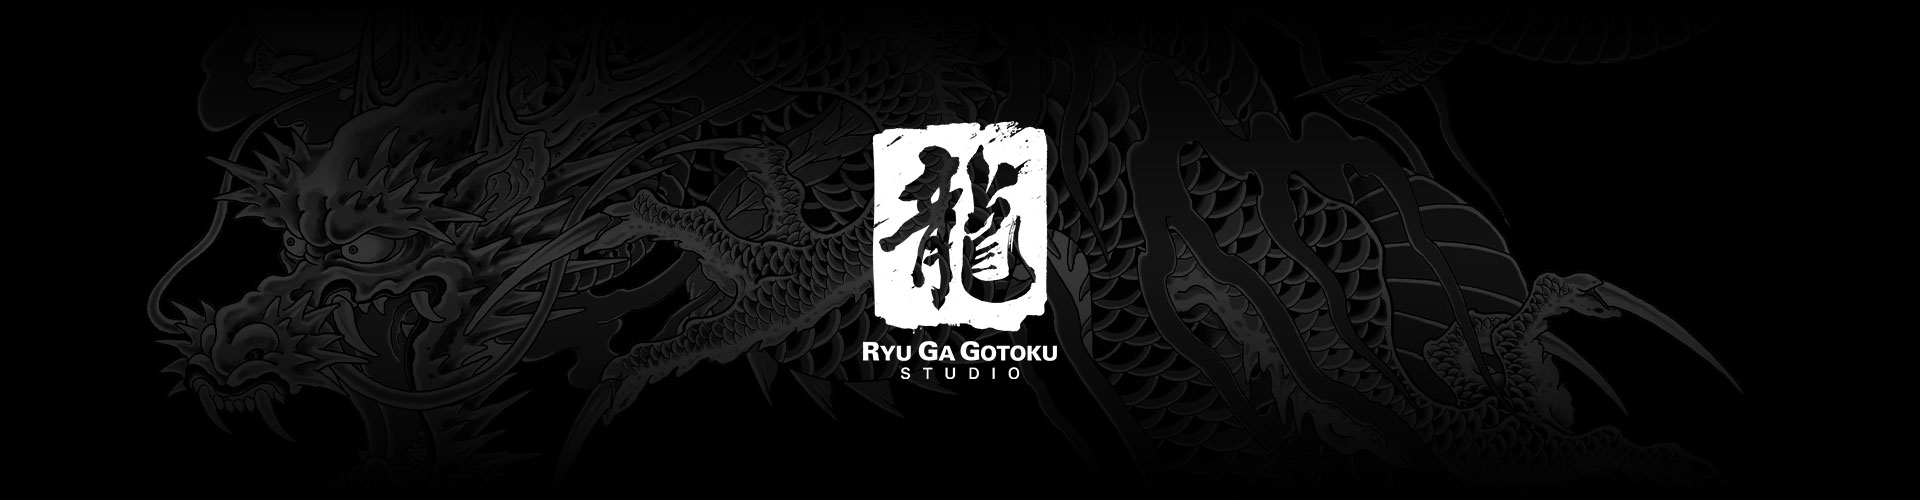 Das Logo des Ryu Ga Gotoku-Studios mit einem grauen Drachentattoo-Hintergrund.